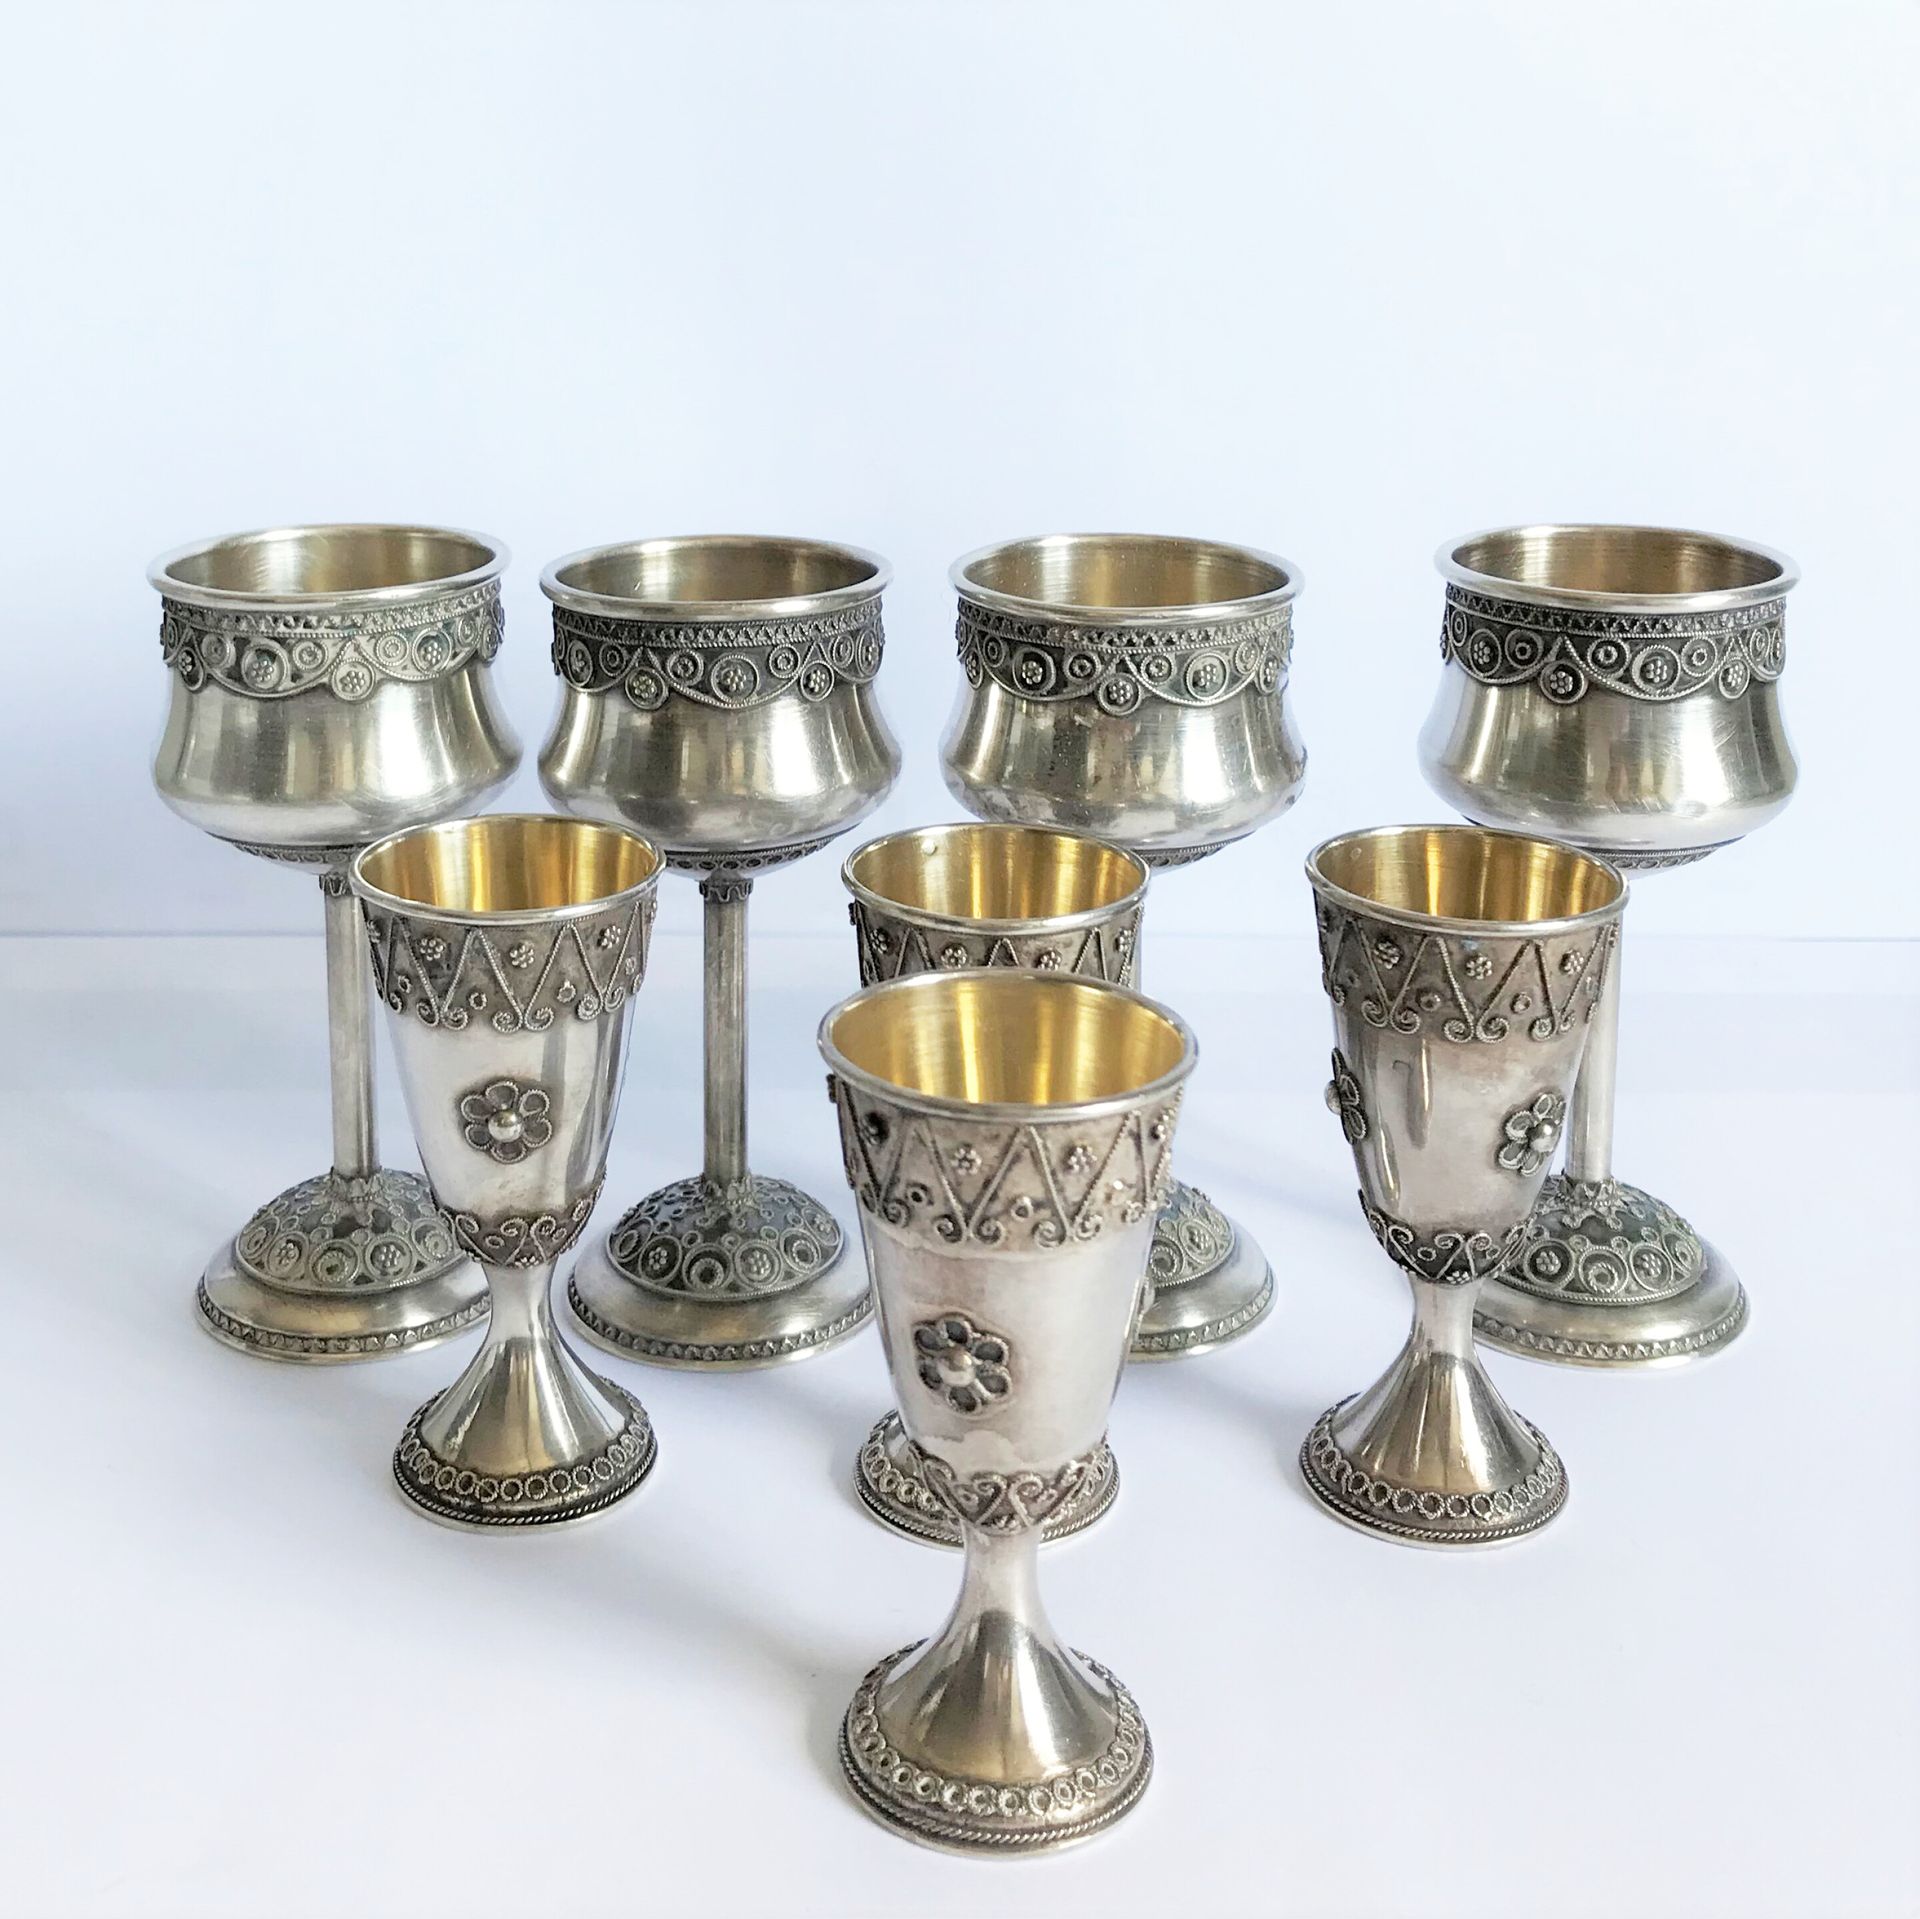 Null 四只脚踏玻璃杯和四只利口酒杯，金属材质，带花纹装饰。

东方工作(马格里布)

H.10和7厘米